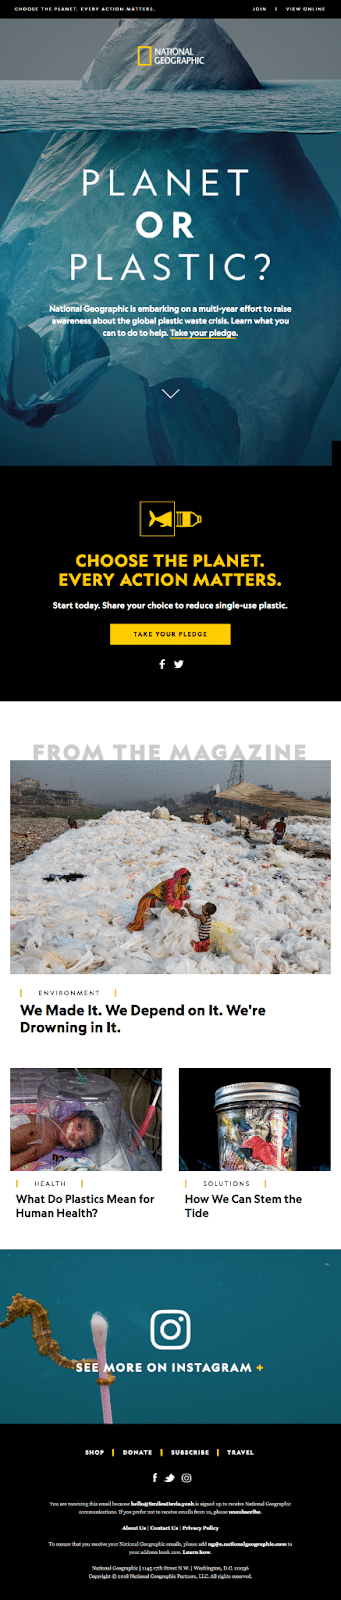 Esempio di newsletter del National Geographic